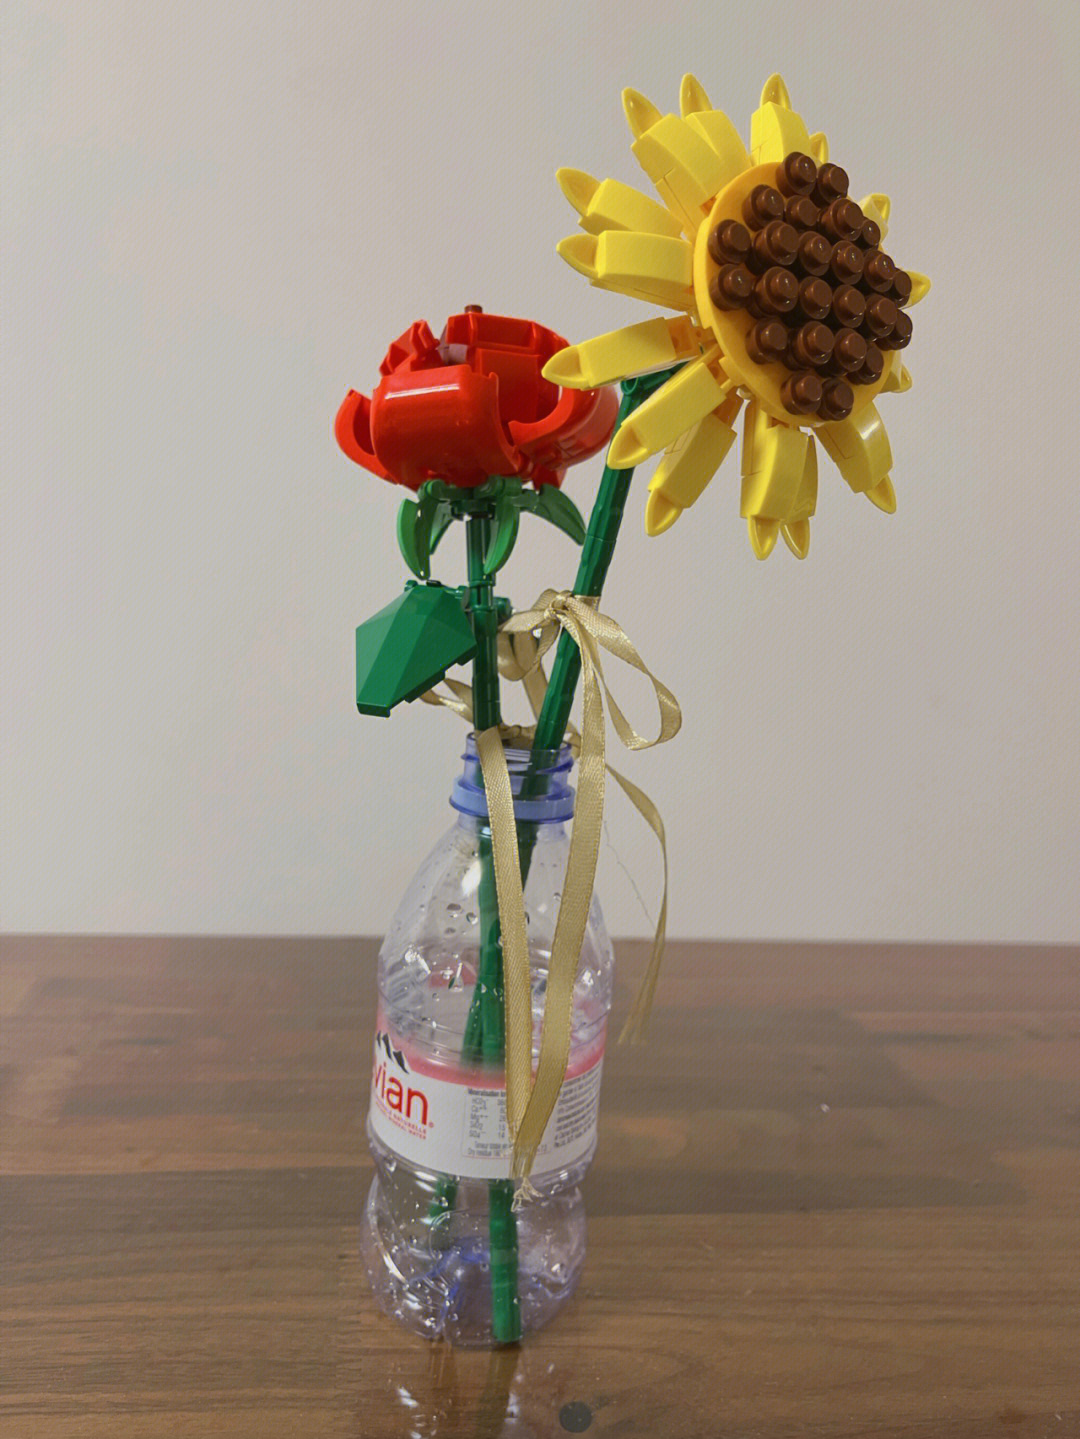 塑料瓶做花瓶 步骤图片